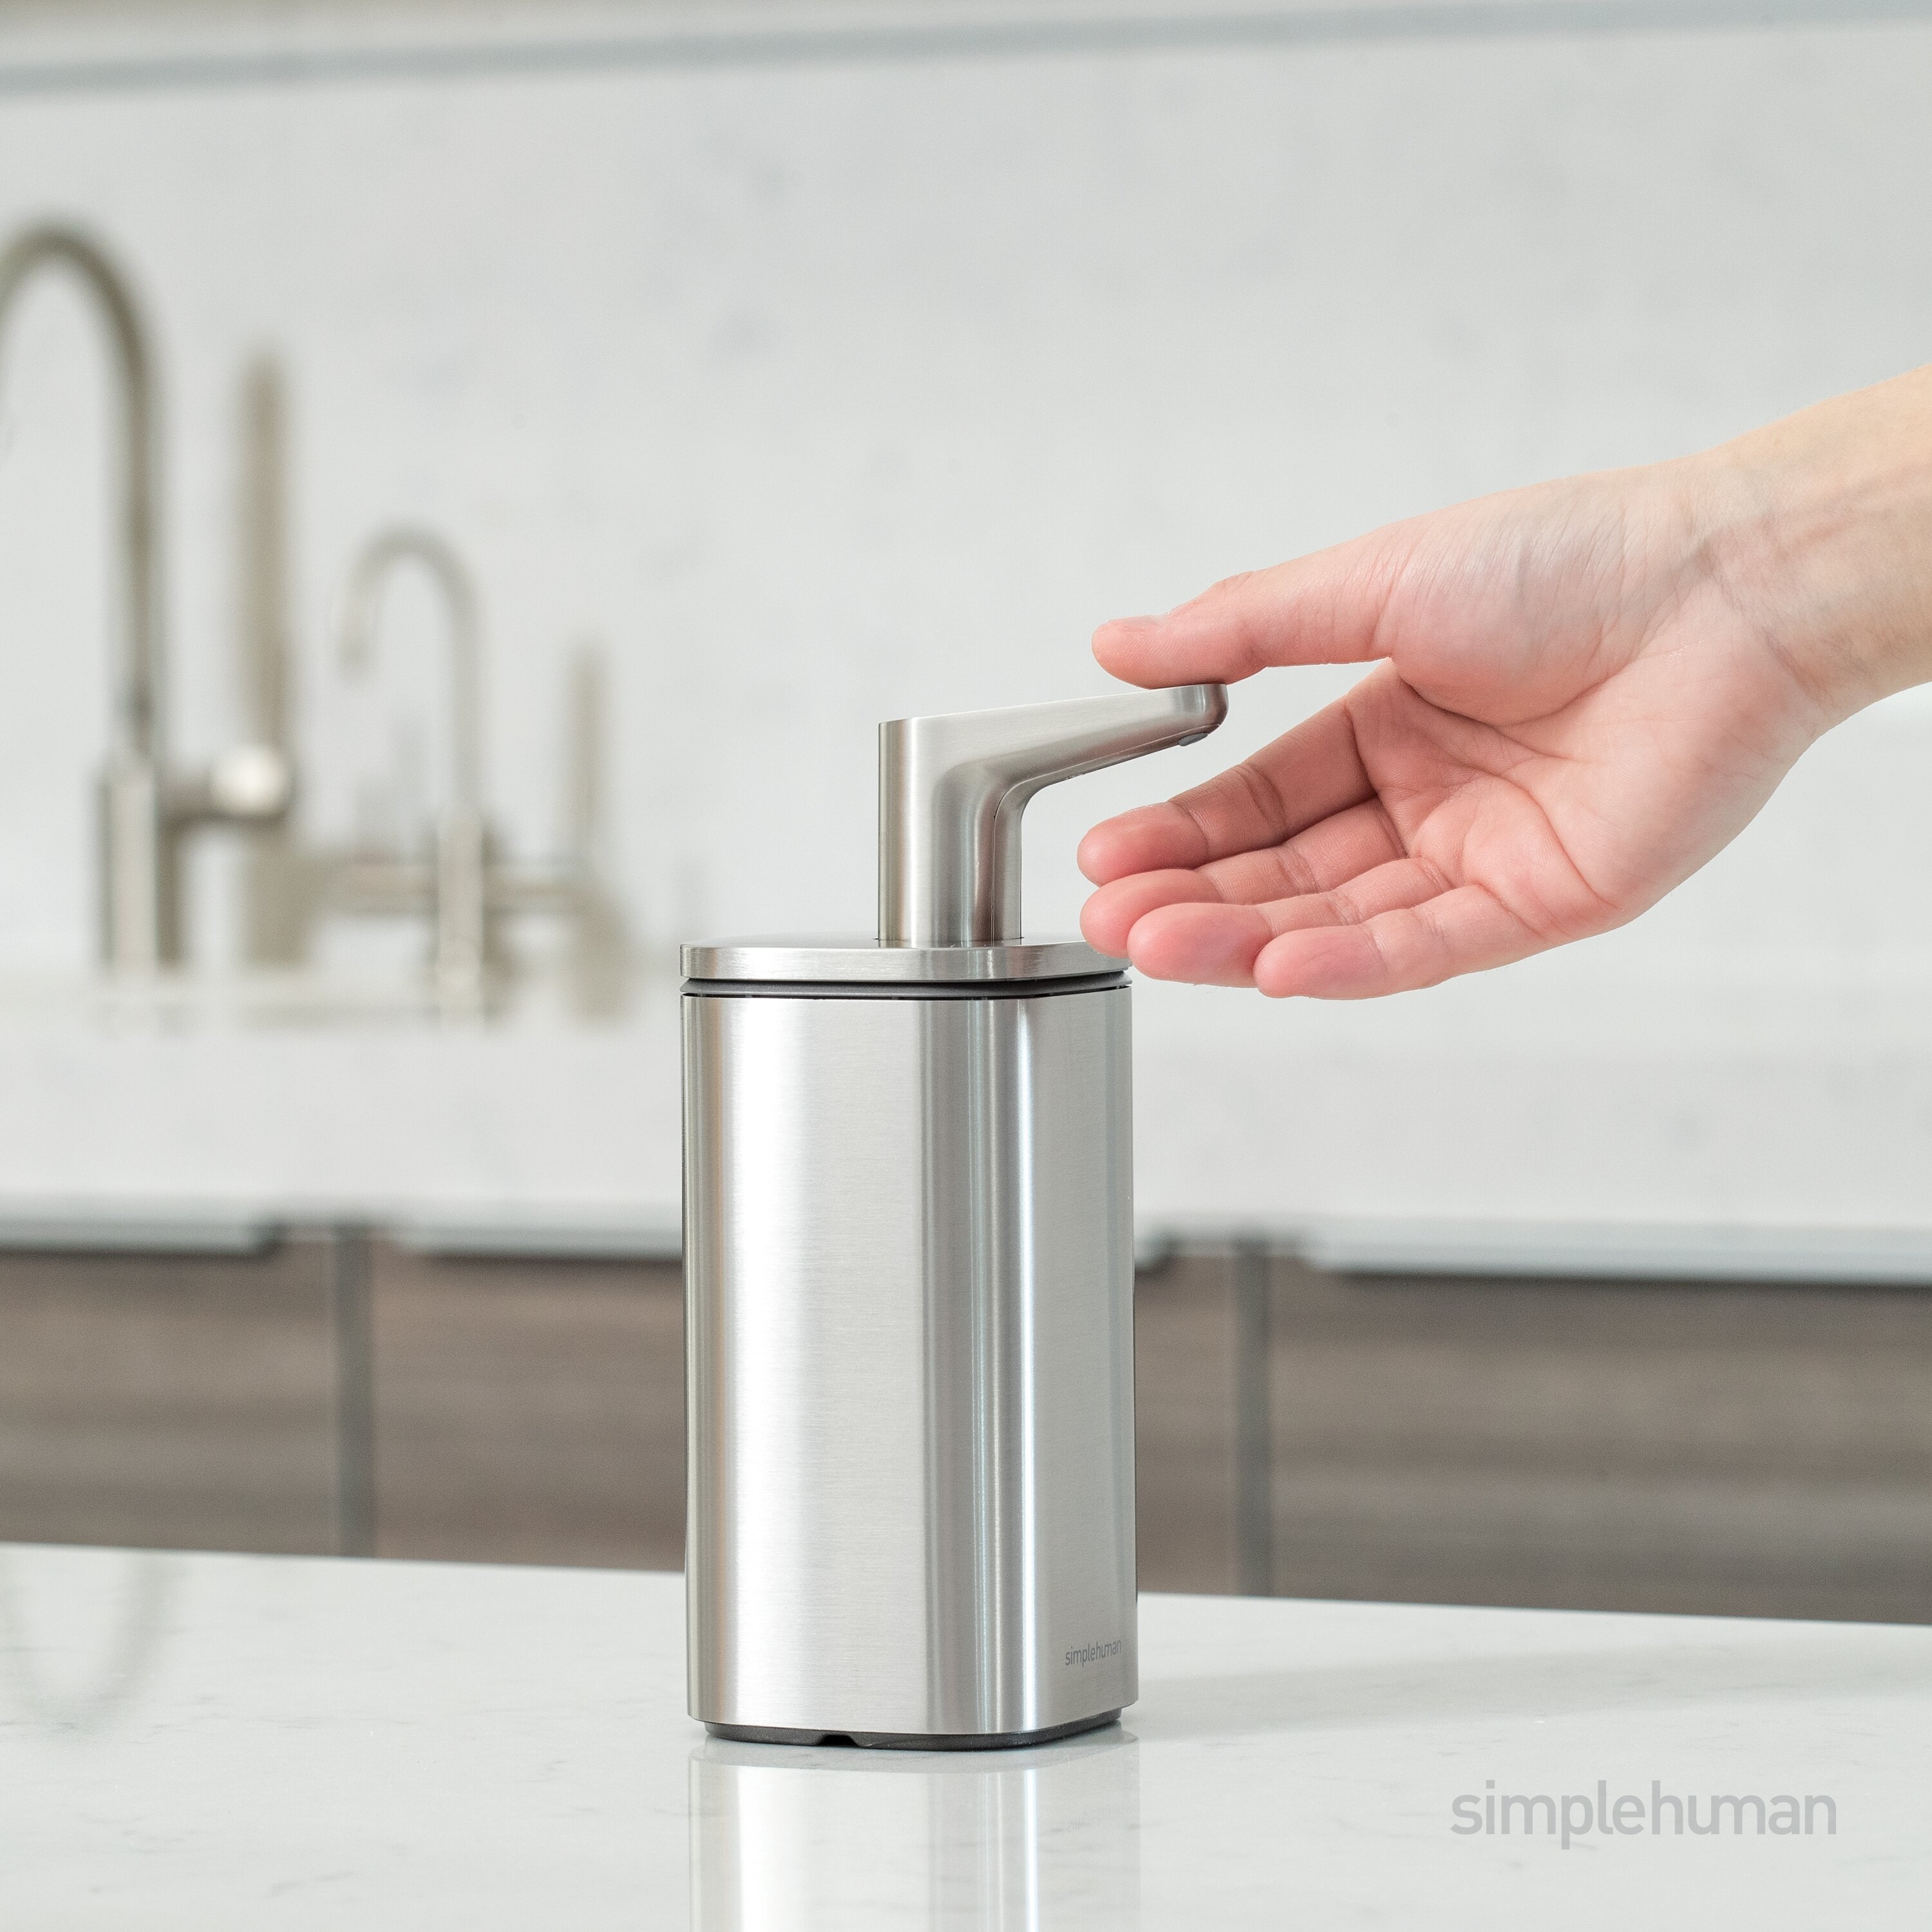 https://assets.wfcdn.com/im/91906056/compr-r85/1502/150282503/simplehuman-10-oz-liquid-soap-pulse-pump-dispenser-brushed-stainless-steel.jpg